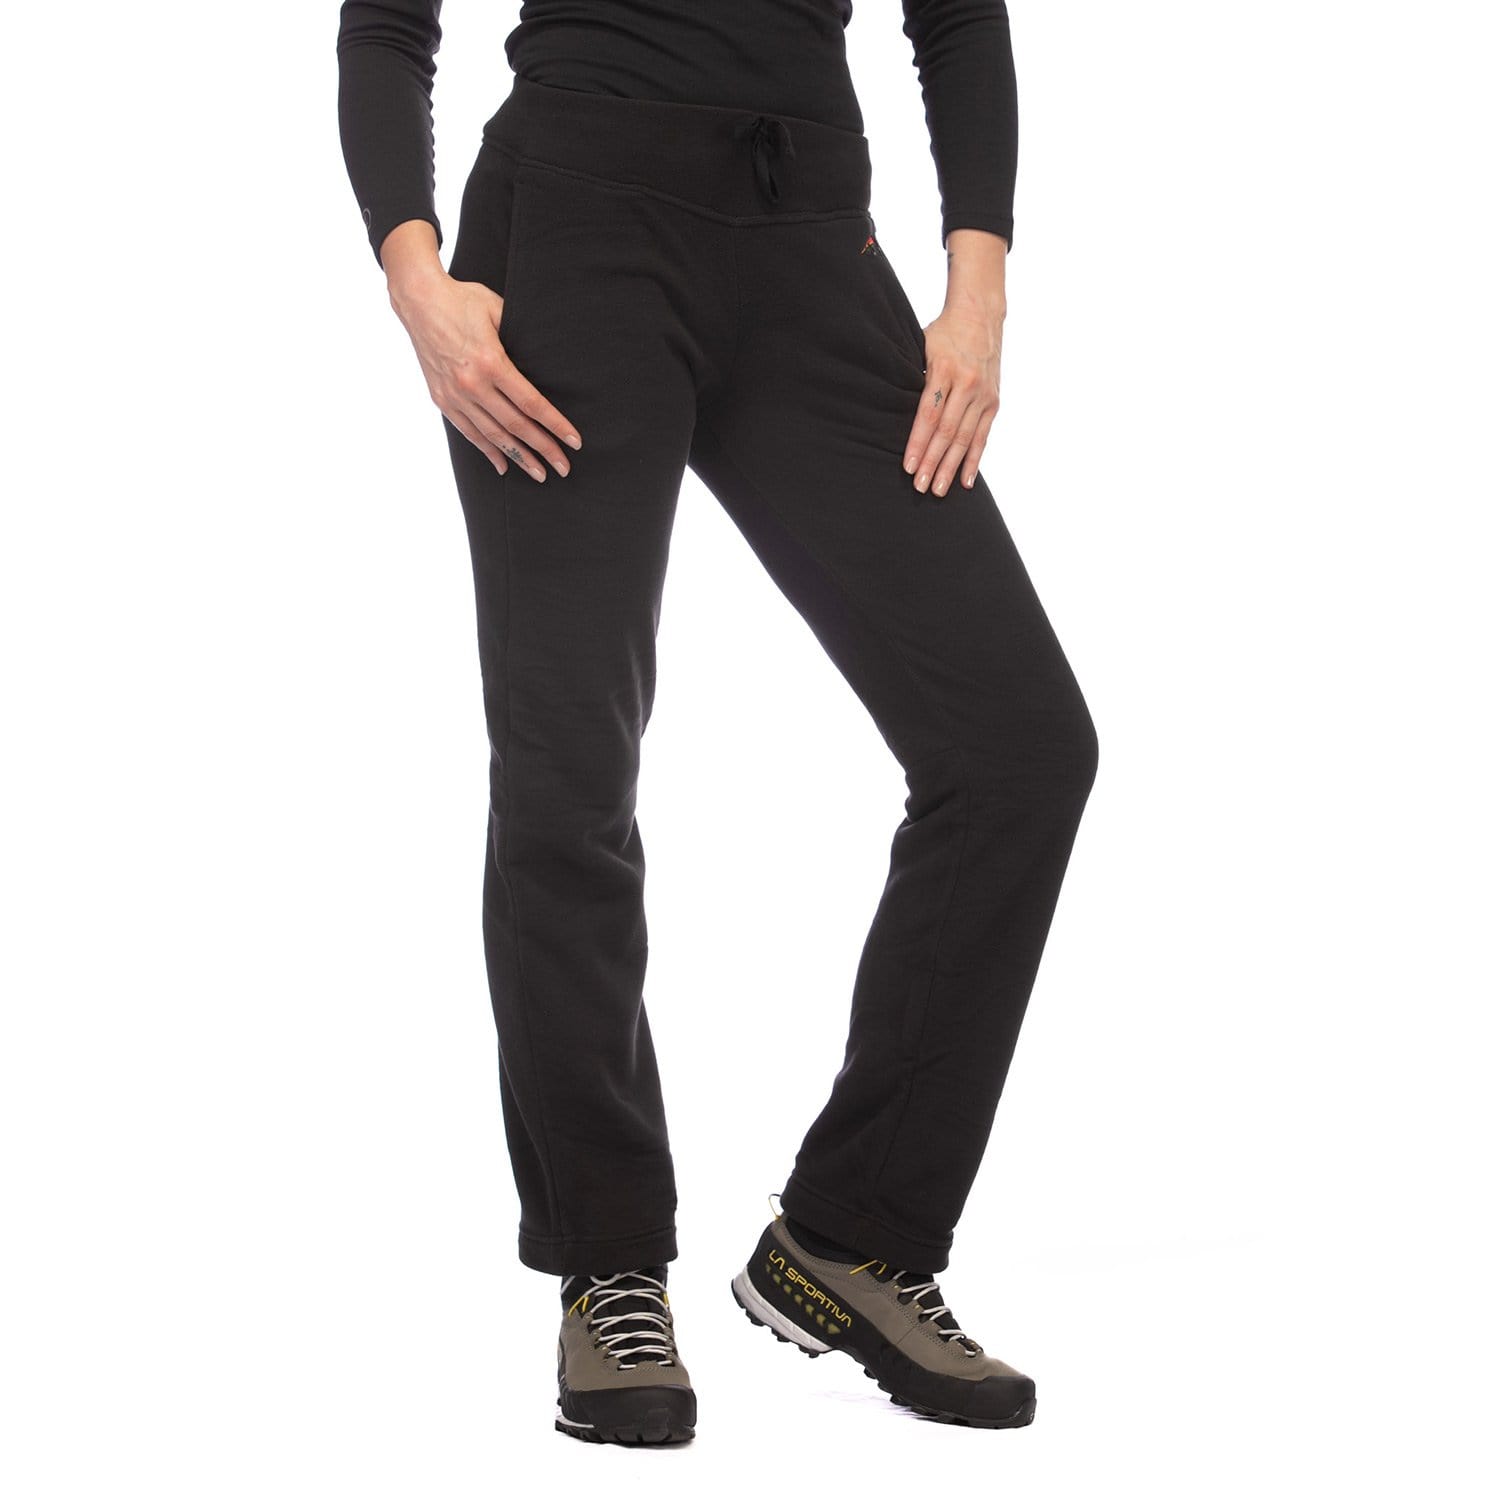 Women's Fleece Pants - Extra Comfy & Warm Fleece Pants for Women - Mont  Adventure Equipment